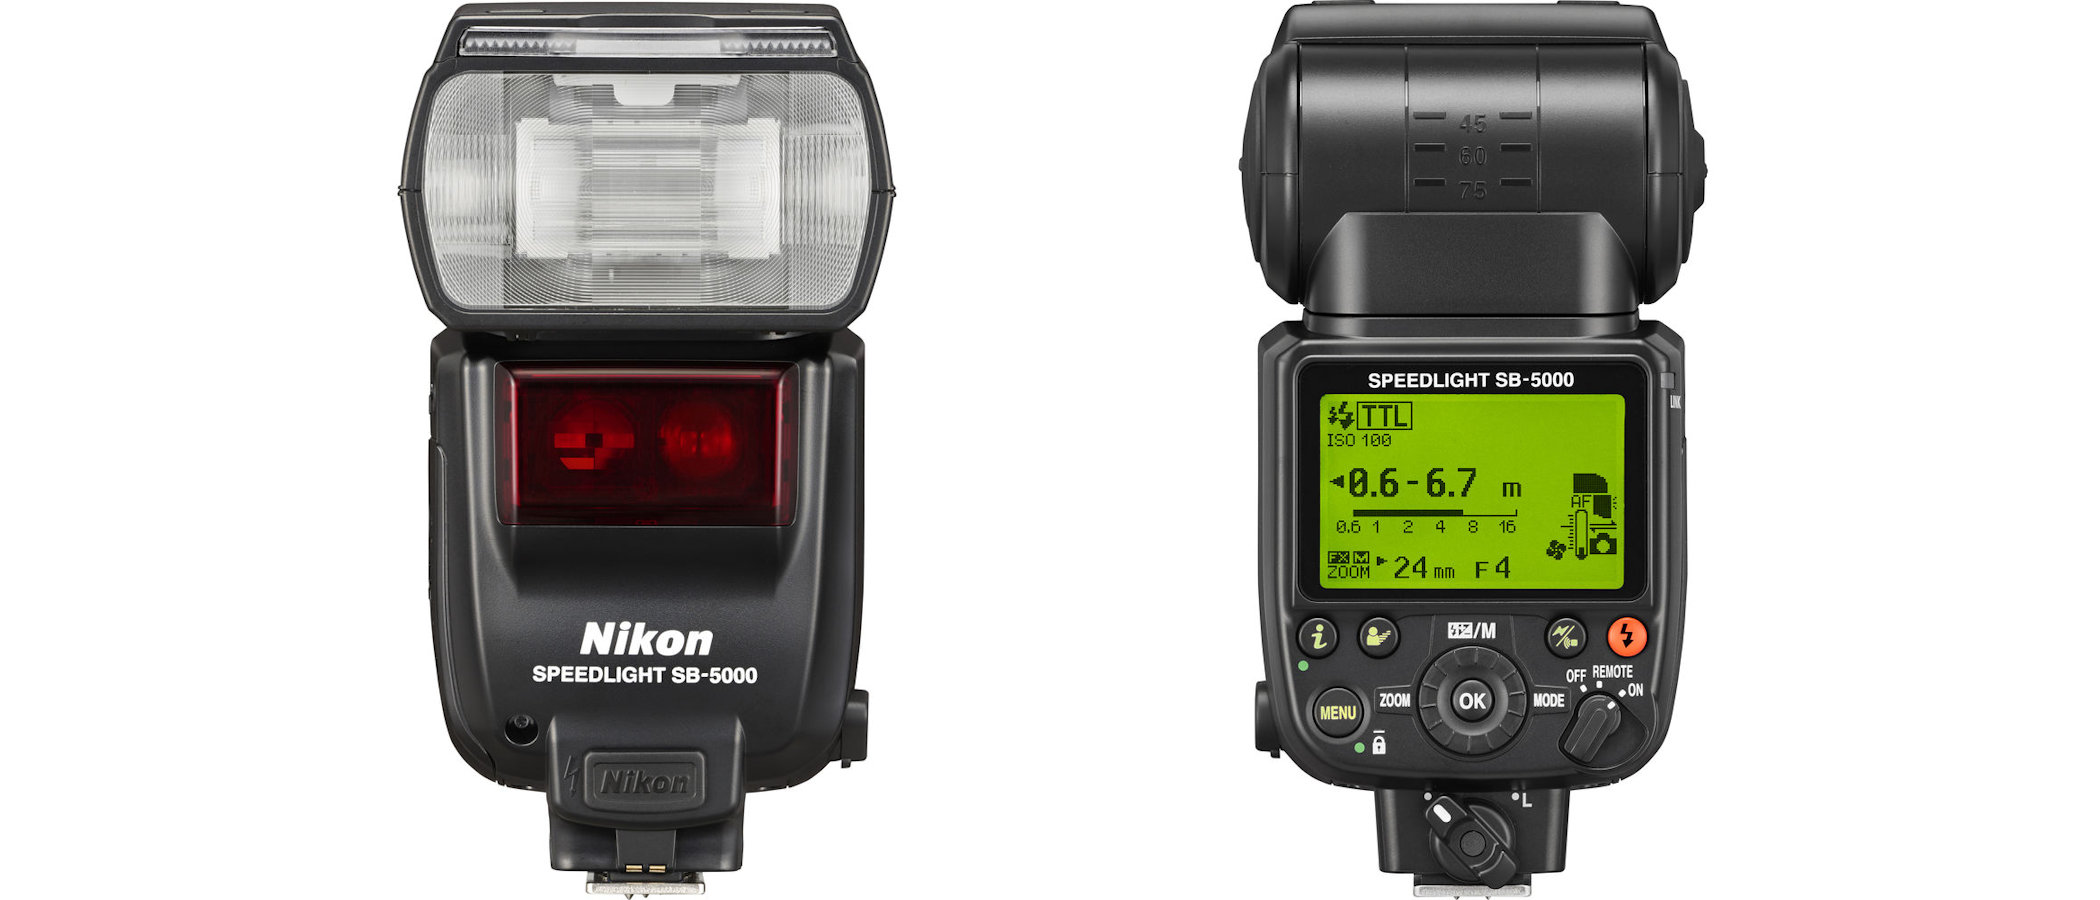 Nikon Speedlight SB-700 review | Digital Camera World